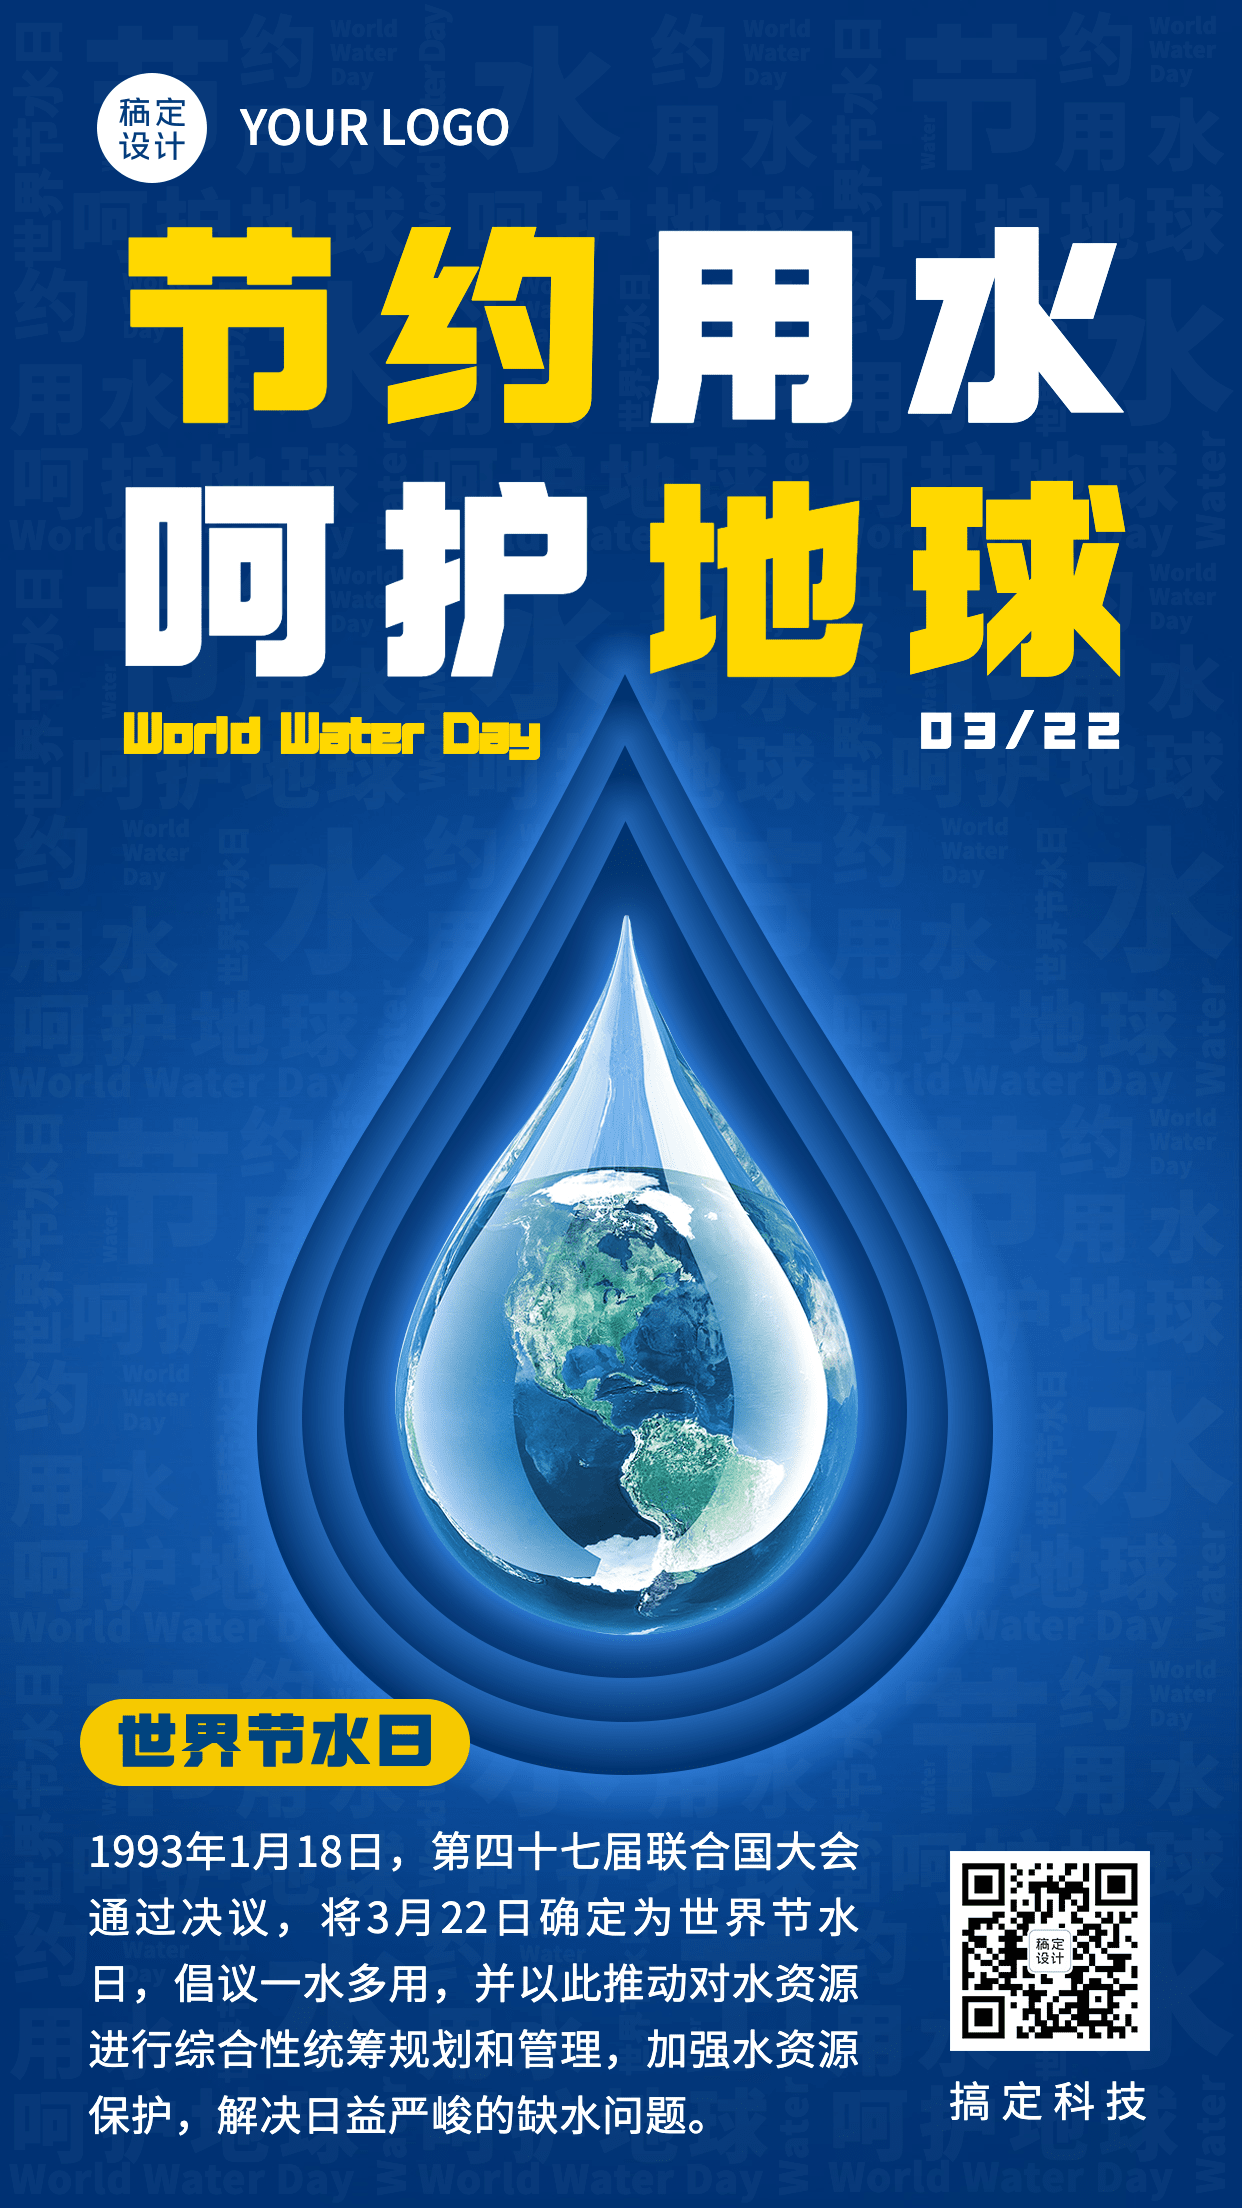 世界节水日节日科普宣传创意手机海报预览效果